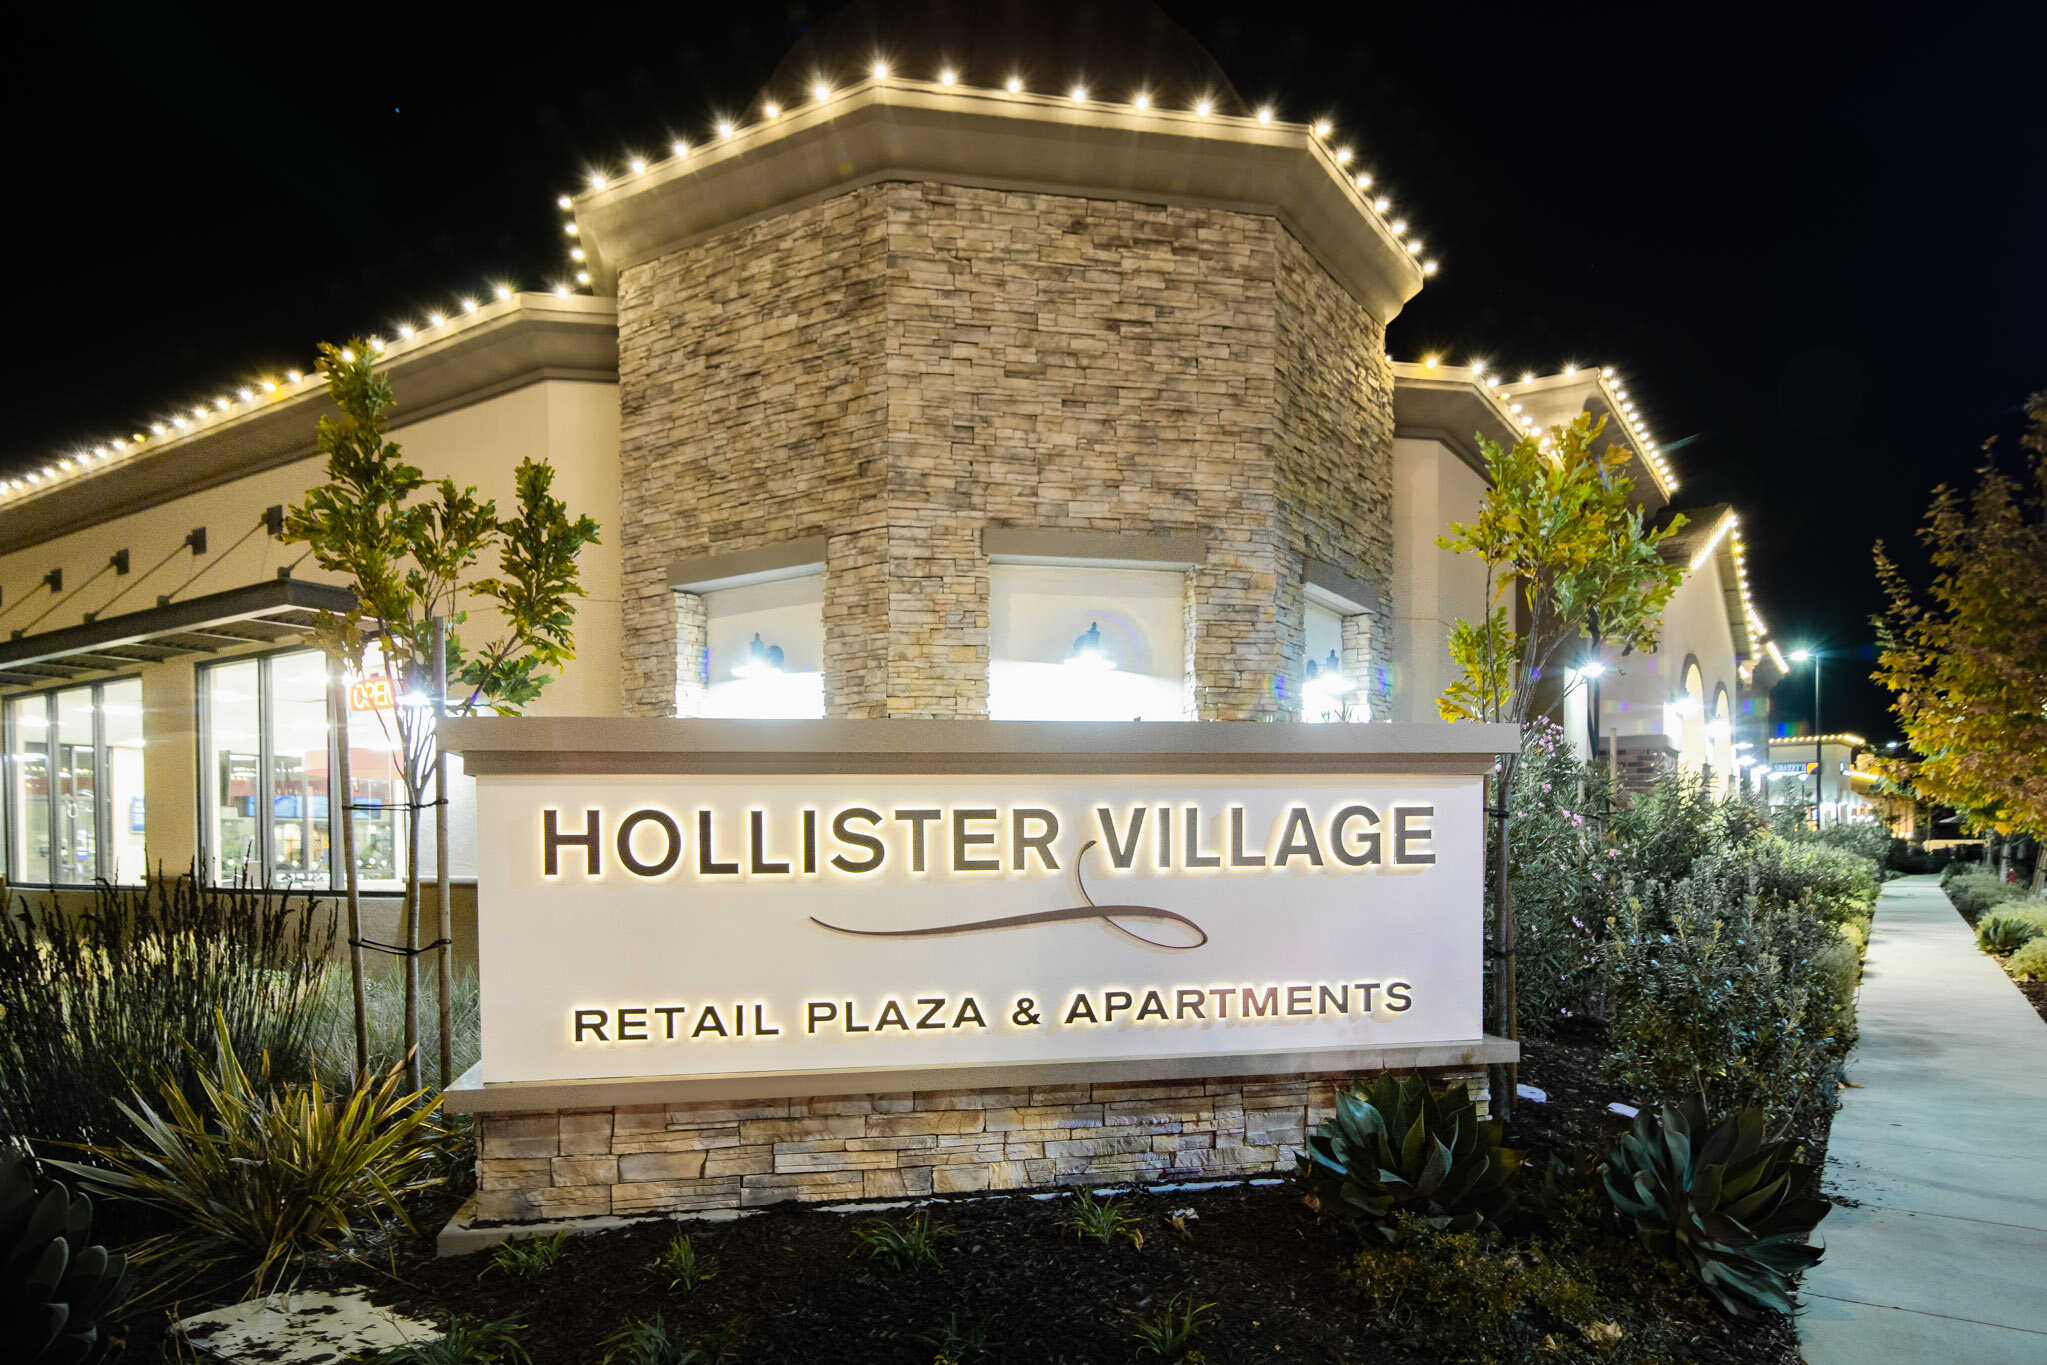 Hollister Village - Santa Barbara Christmas Lights.jpg